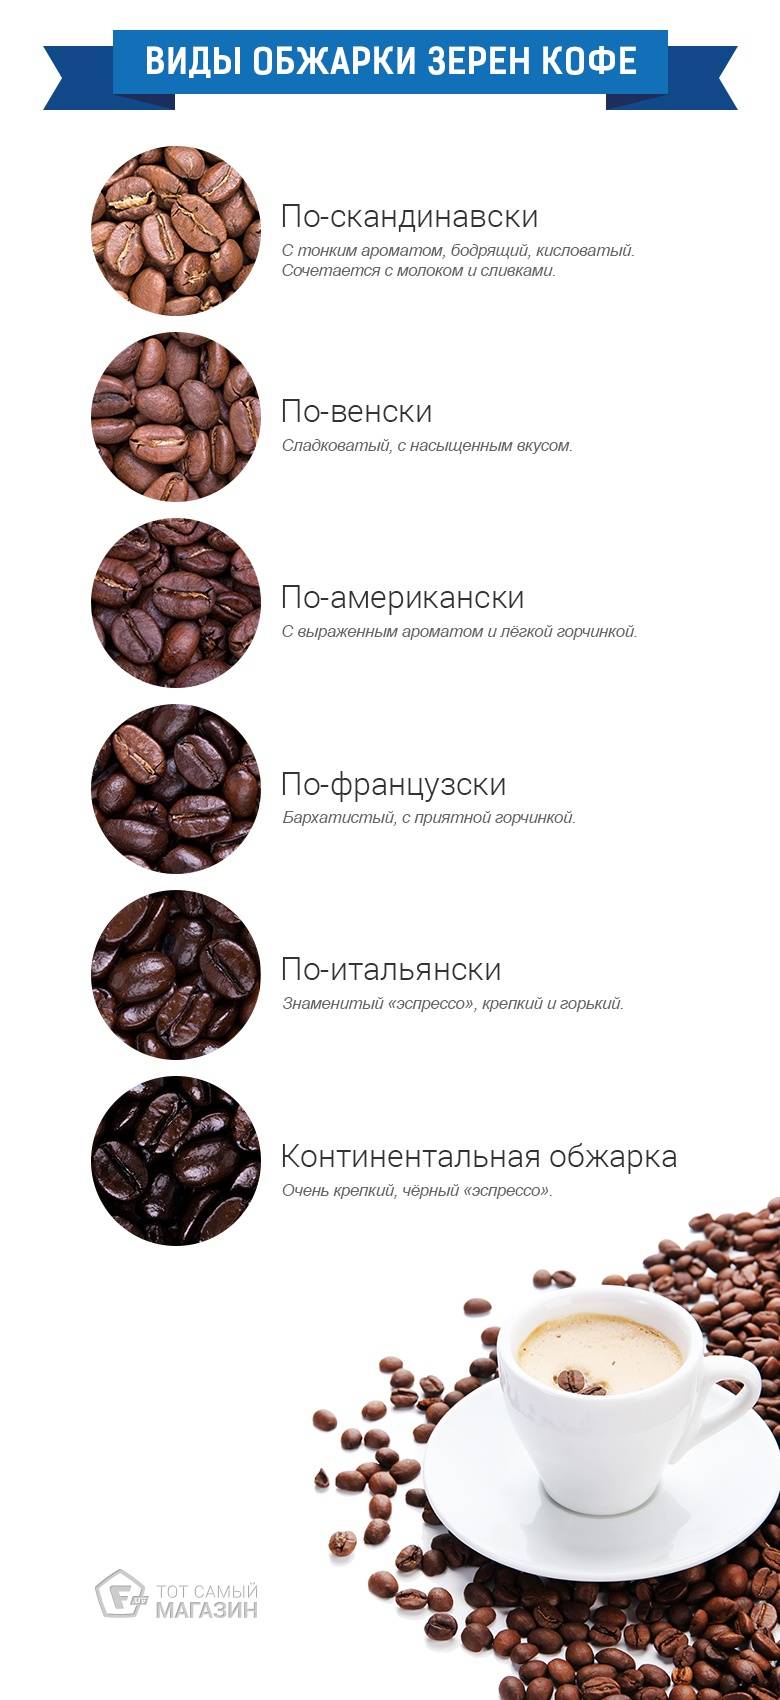 Виды обжарки кофе | все о кофе